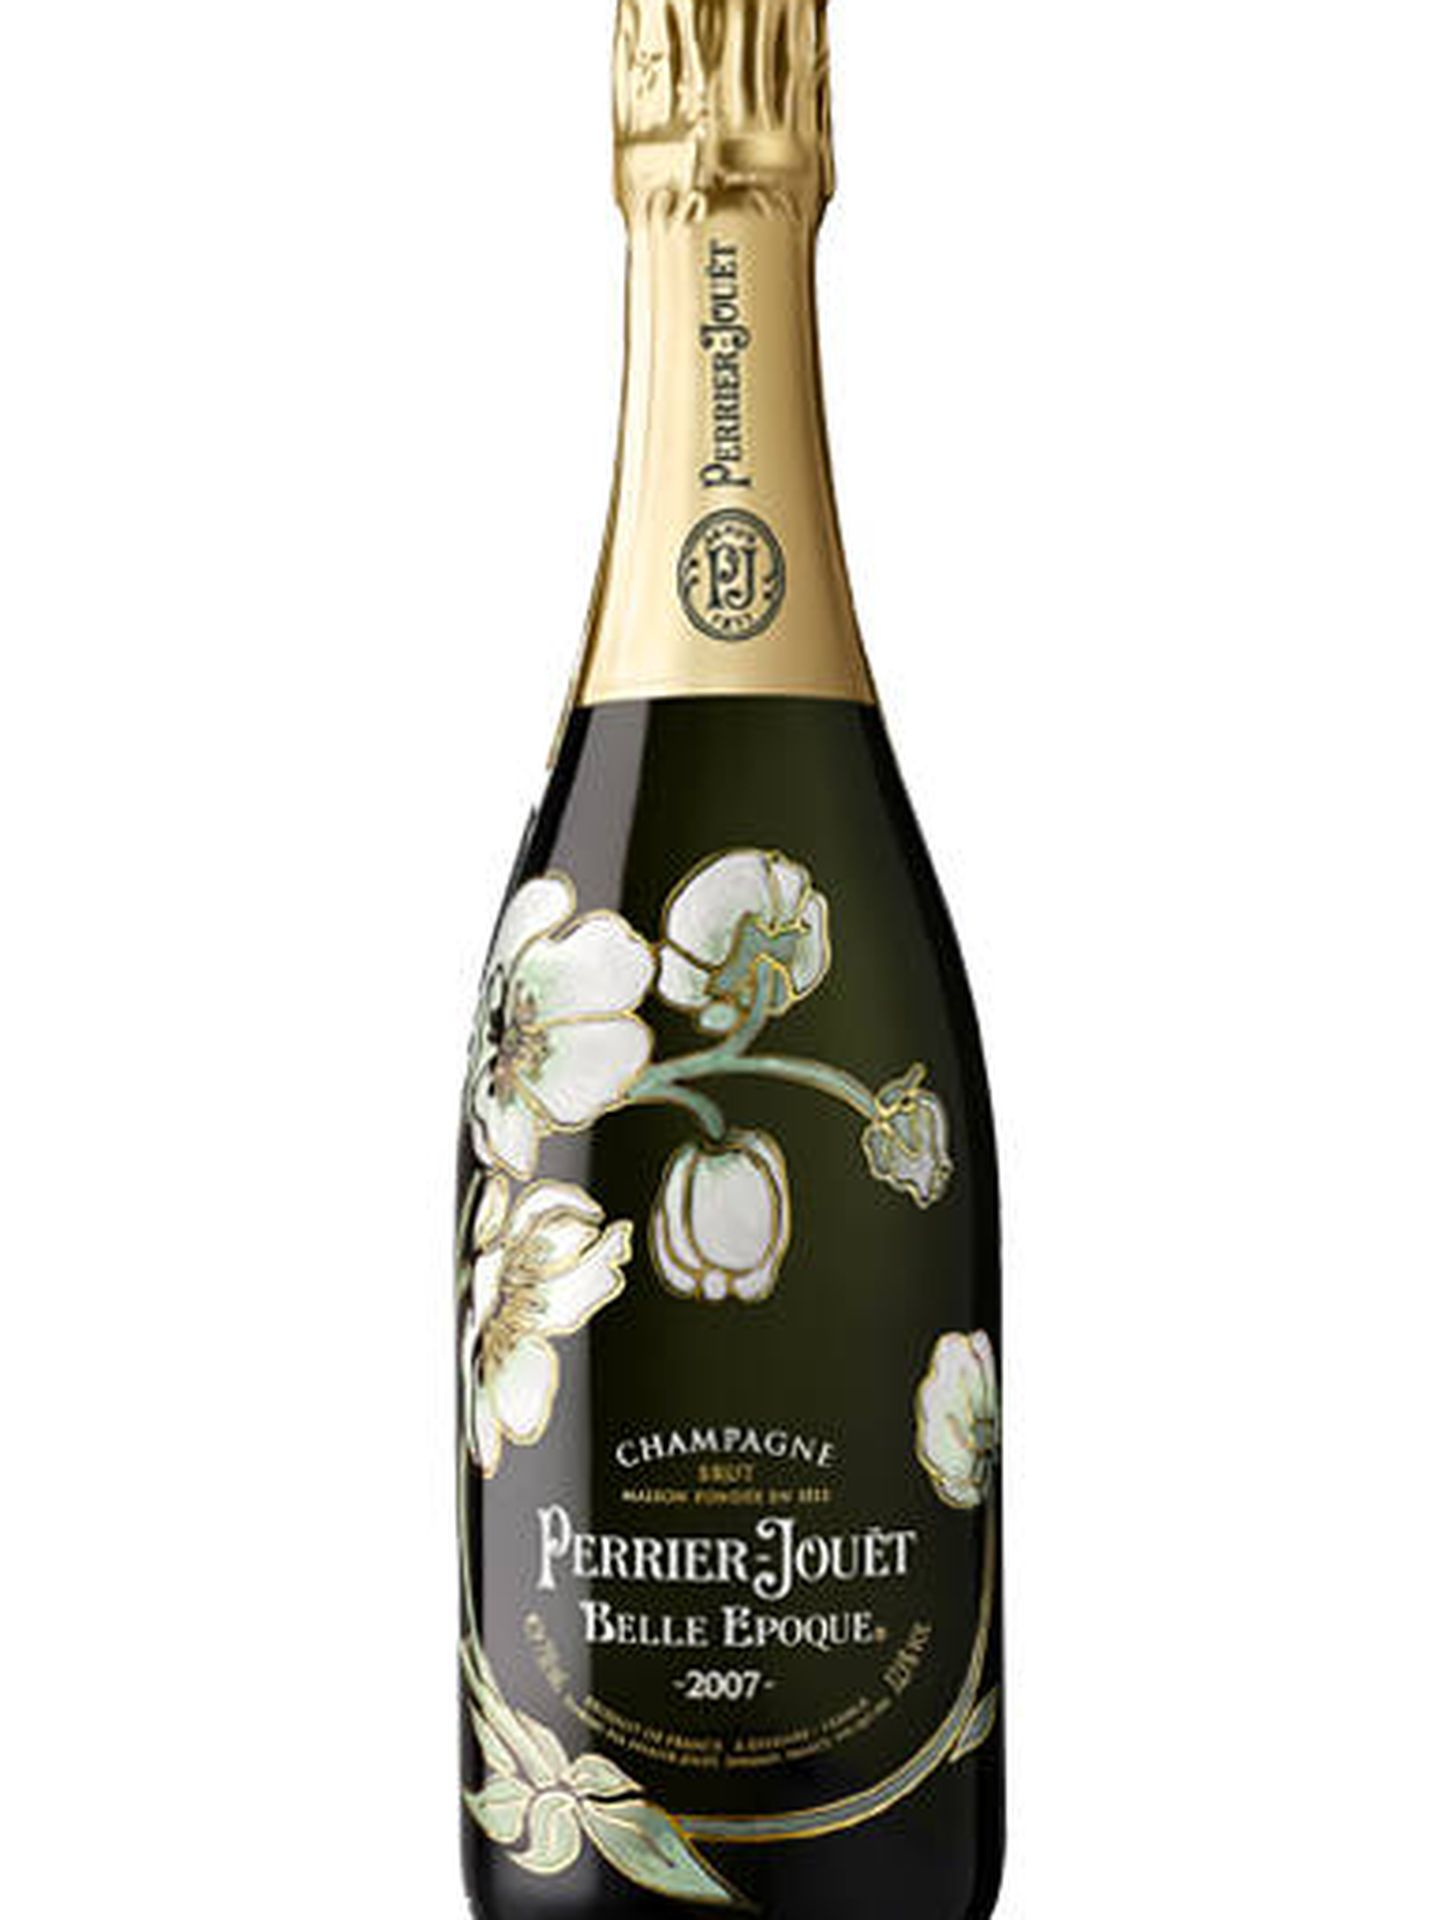 La botella Belle Époque de Perrier-Jouët.